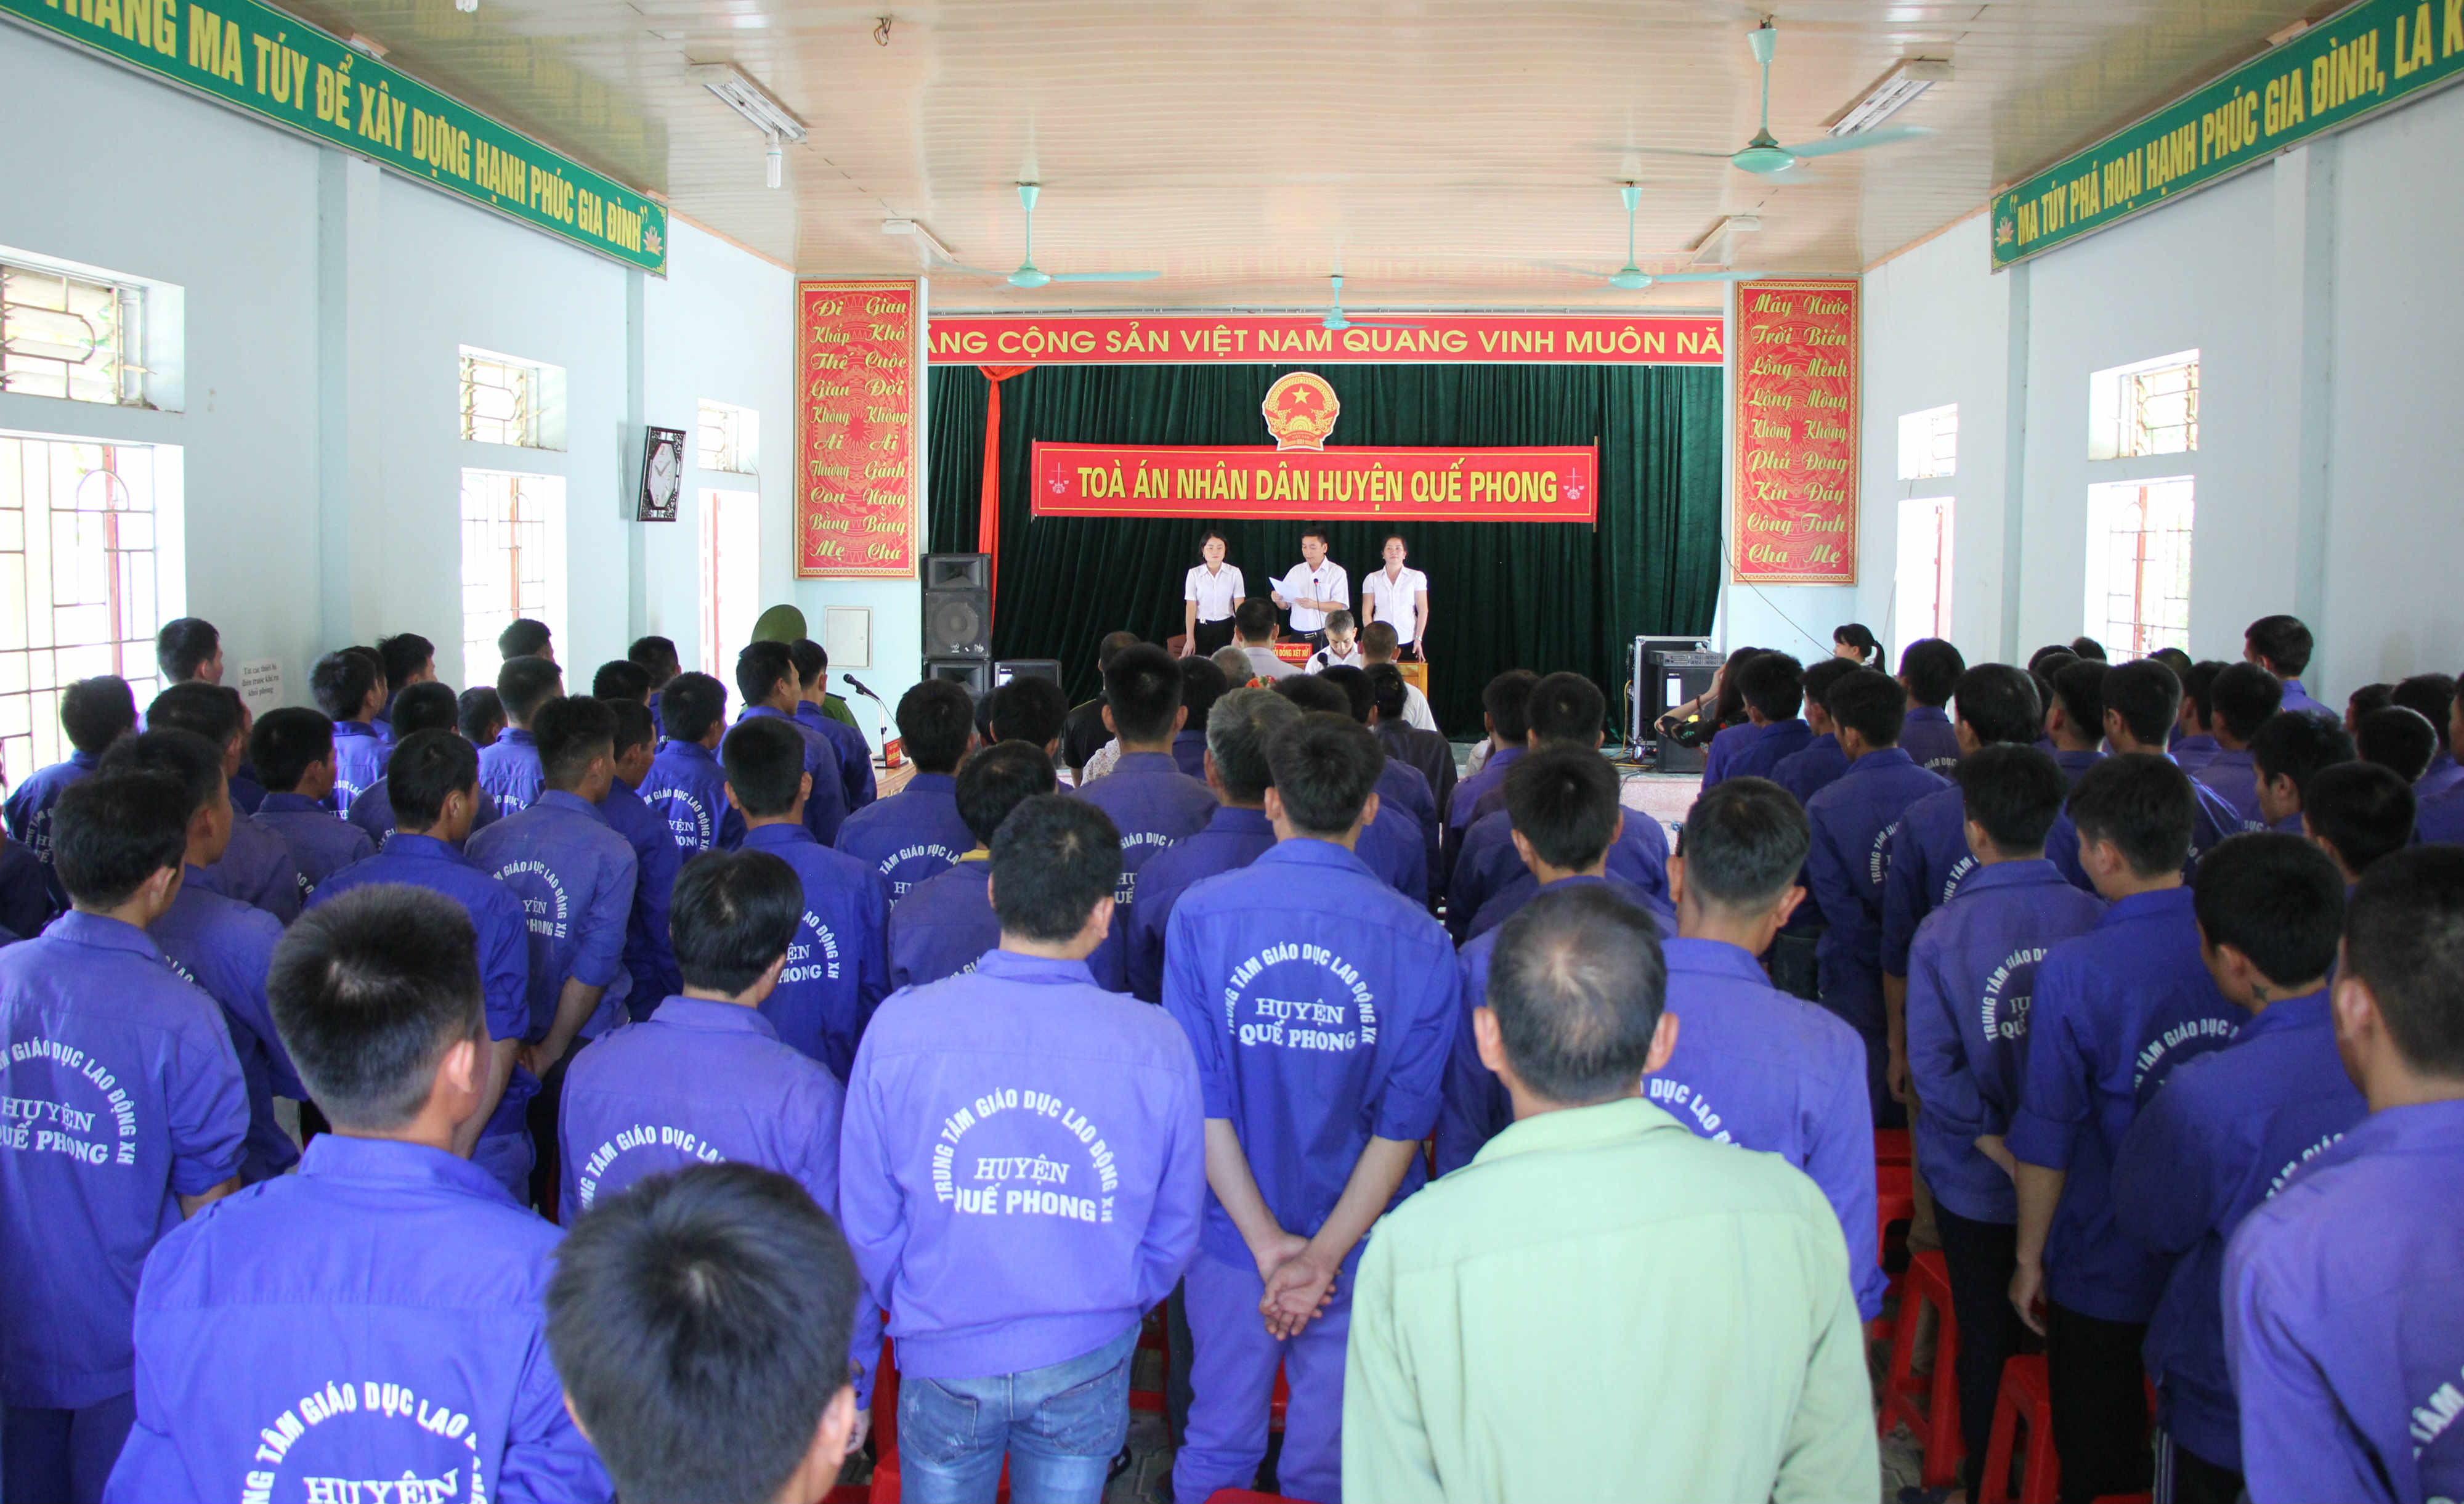 Các vụ án được xét xử tại Trung tâm lao động xã hội huyện Quế Phong mang tính chất giáo dục tuyên truyền cho những đối tượng học tập, lao động tại đây. Ảnh Hùng Cường